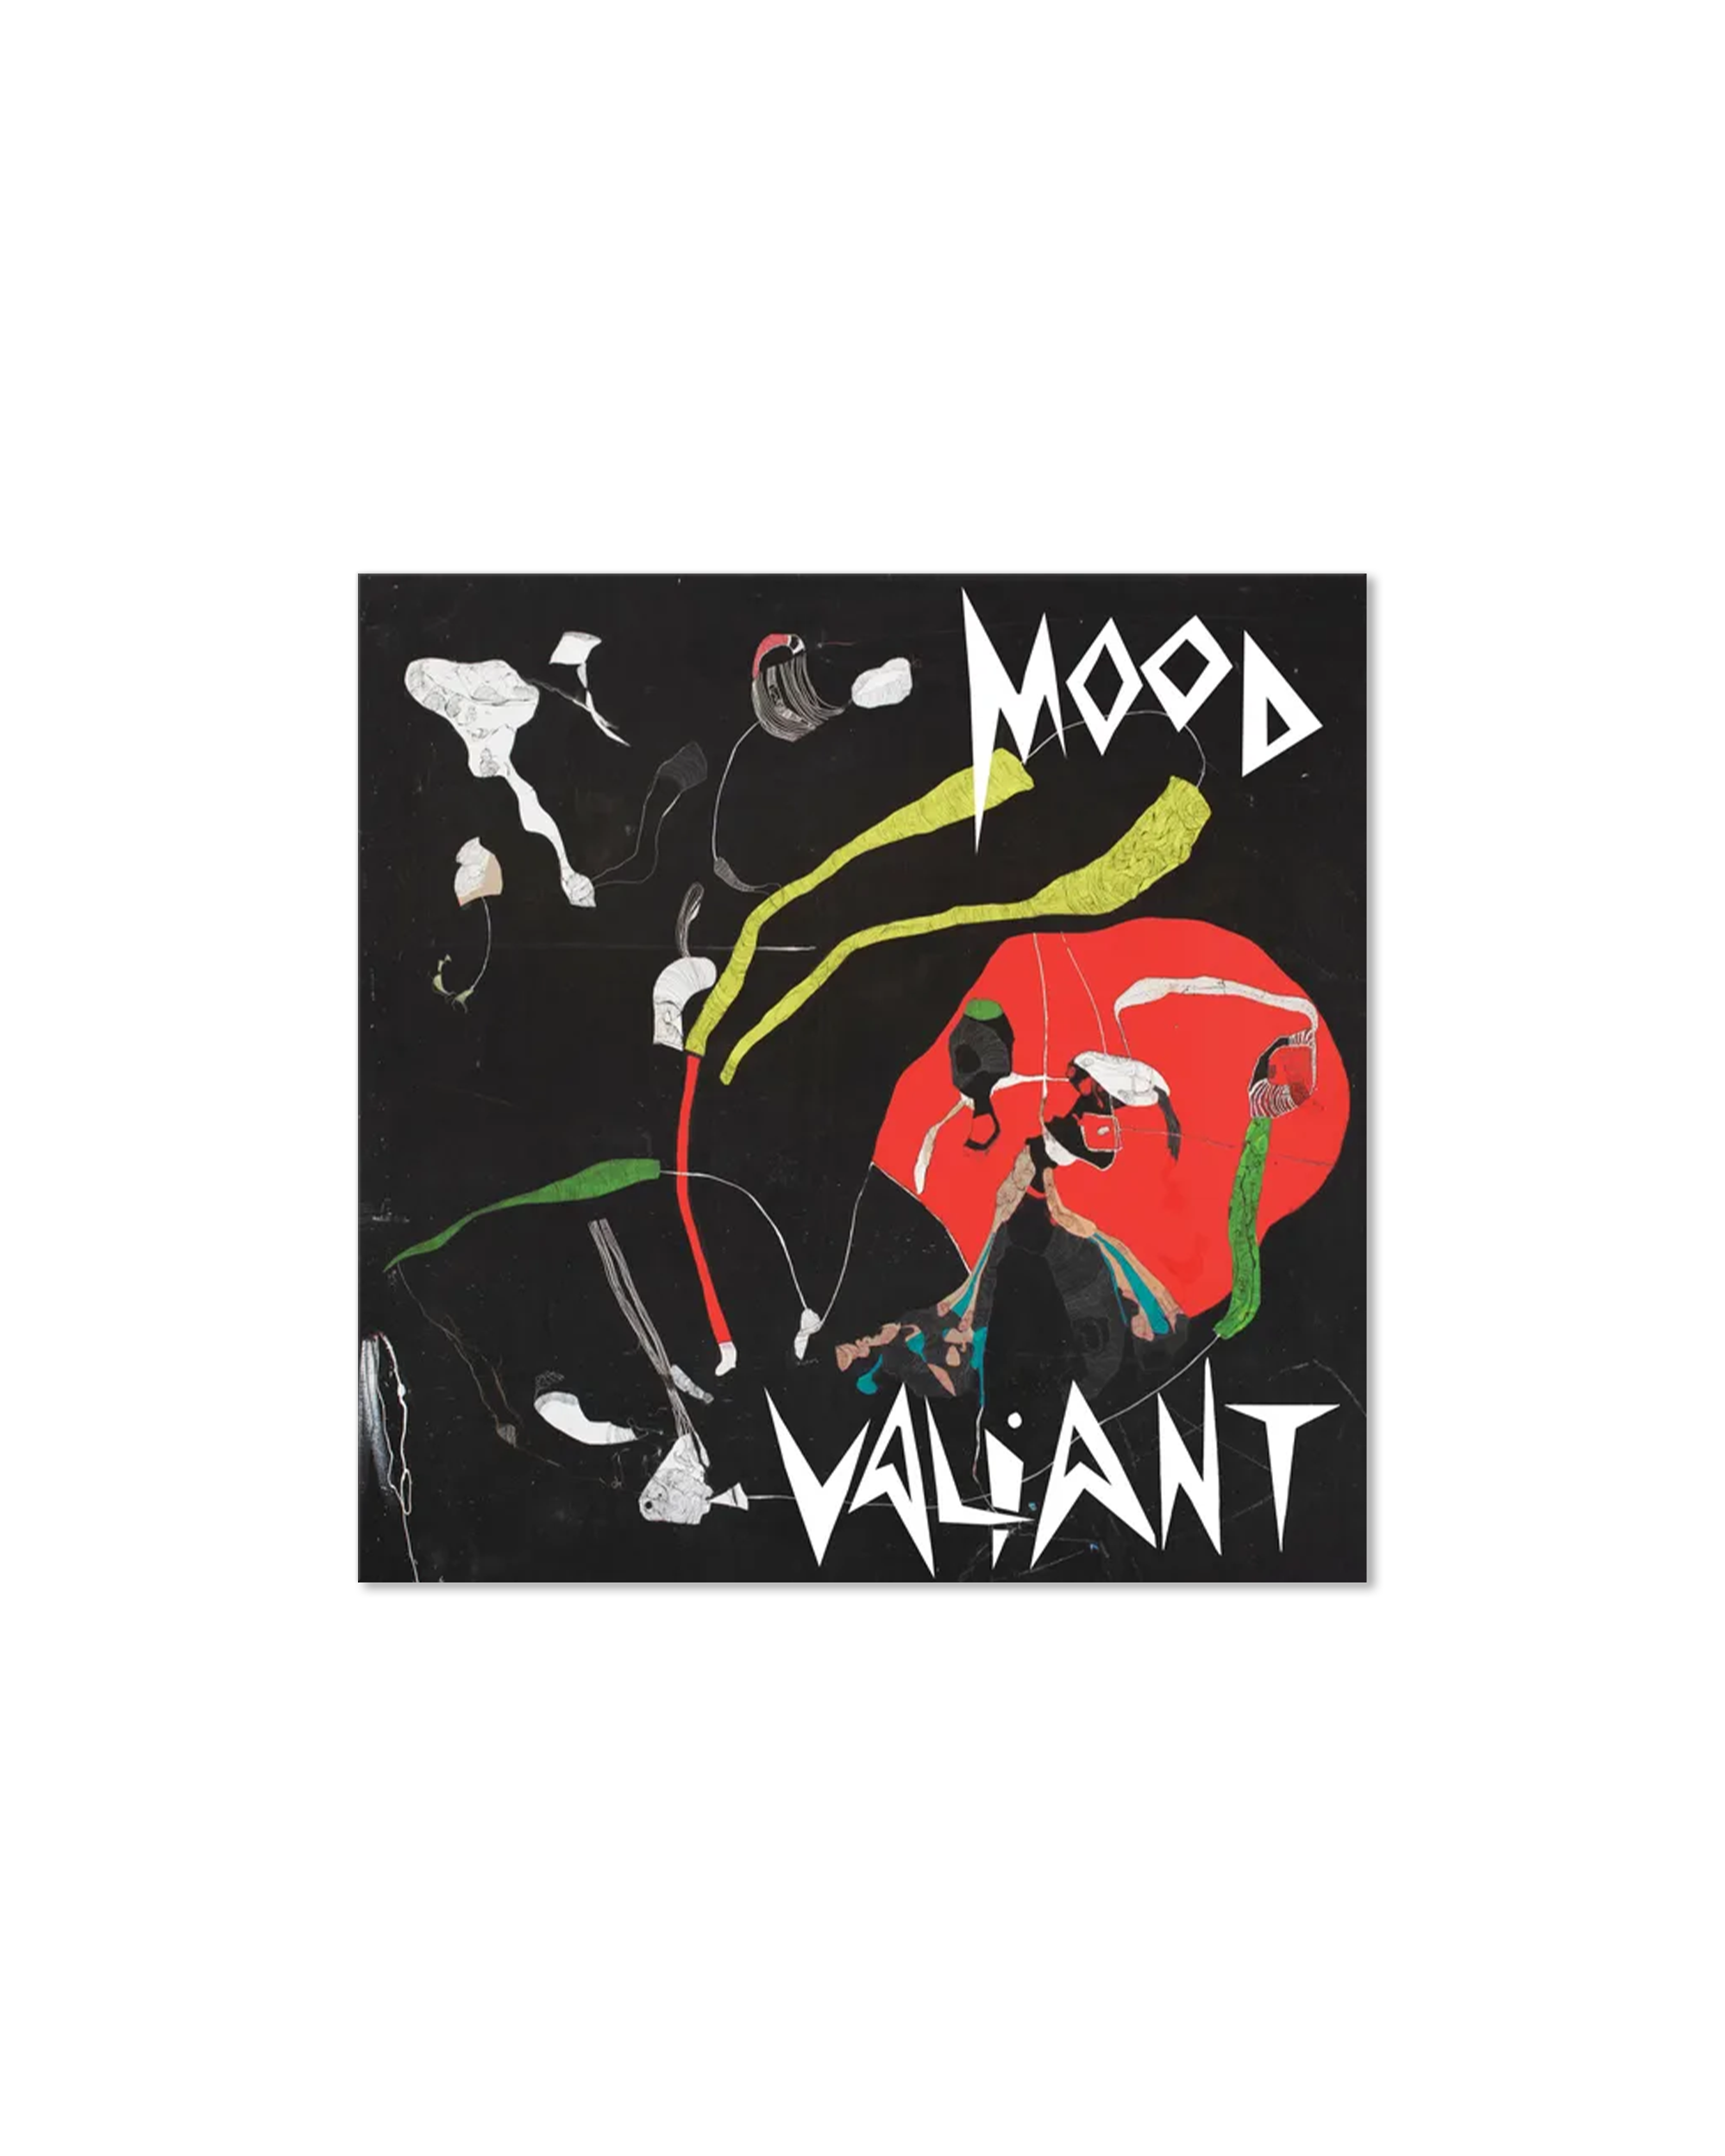 Mood Valiant (Black LP)